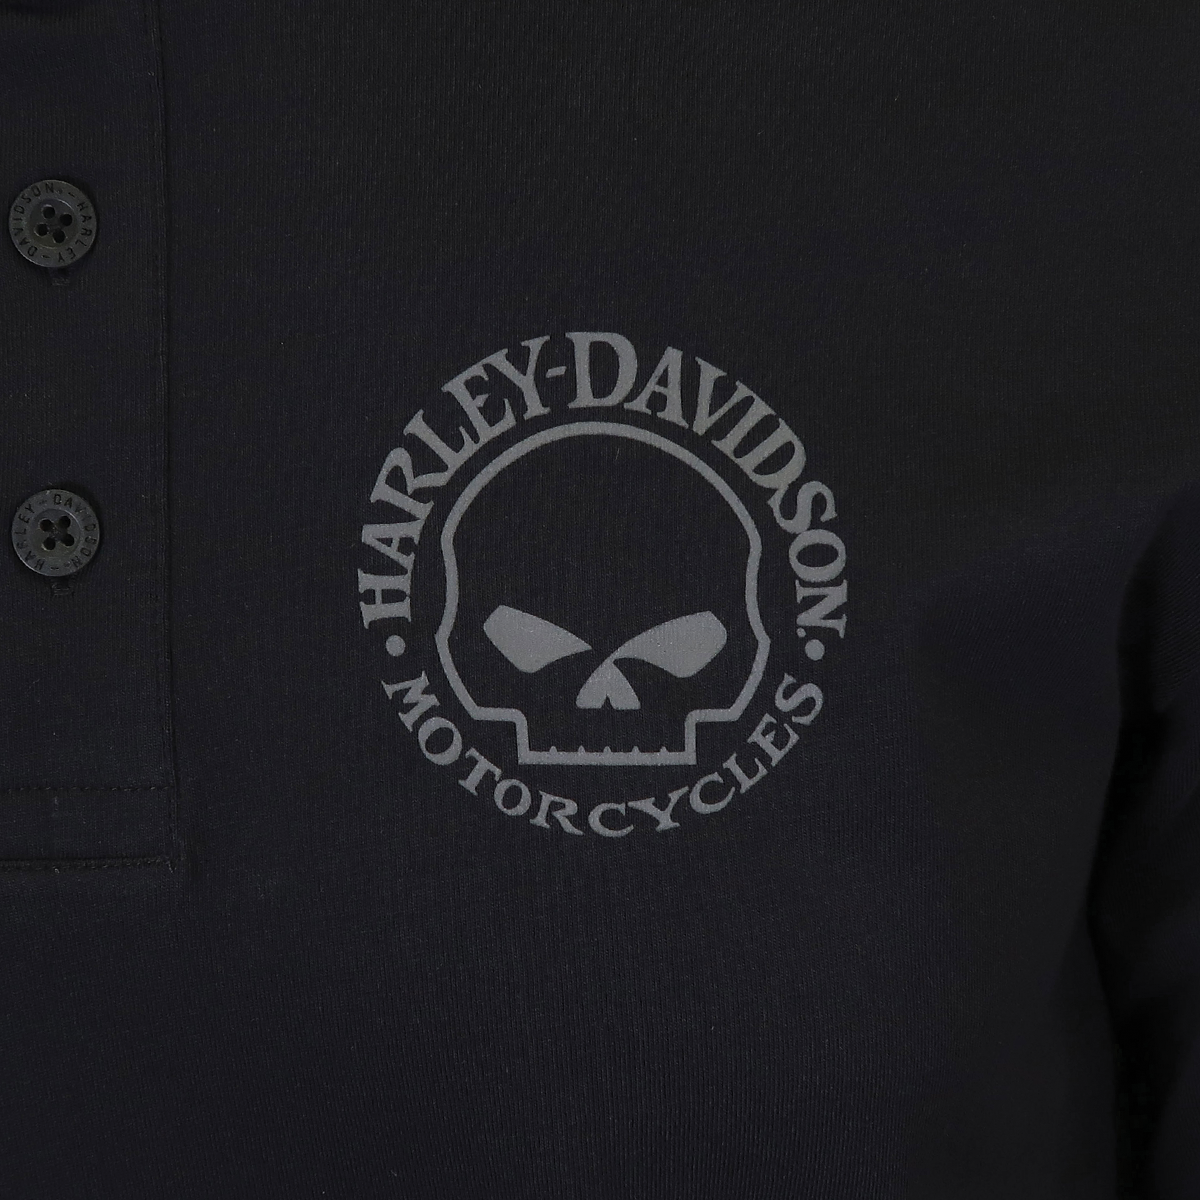 Harley-Davidson Men's Henley T-Shirt Black Willie G Skull 3 Button Long Sleeve